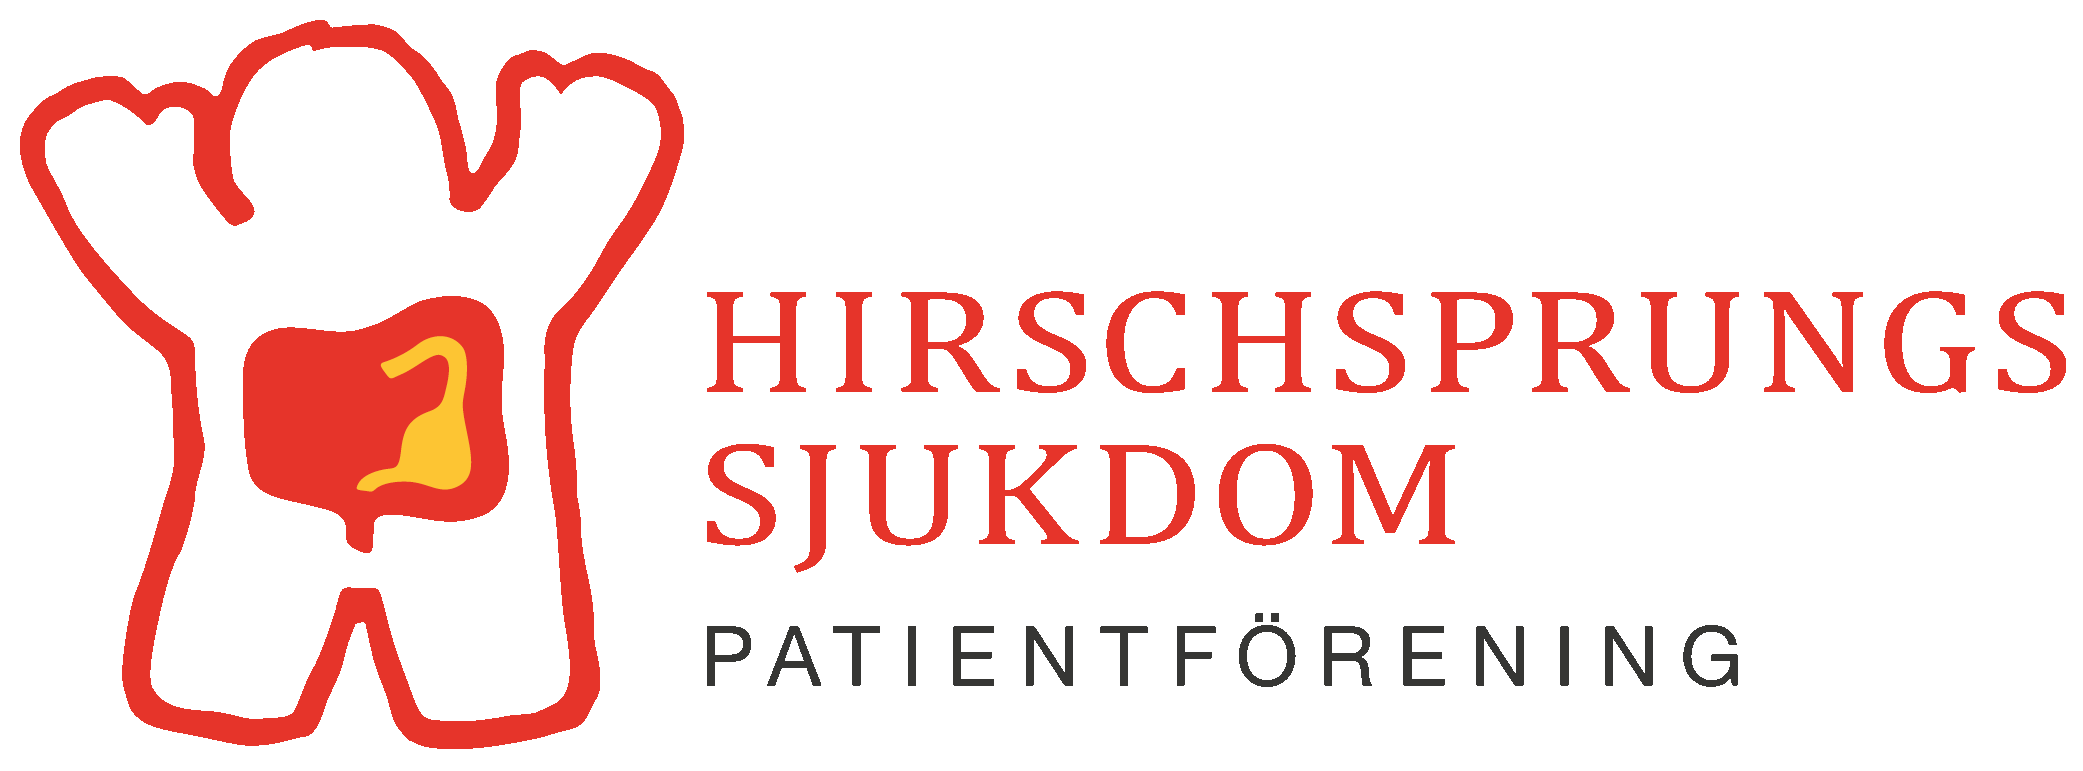 Hirschsprungs sjukdom patientförening